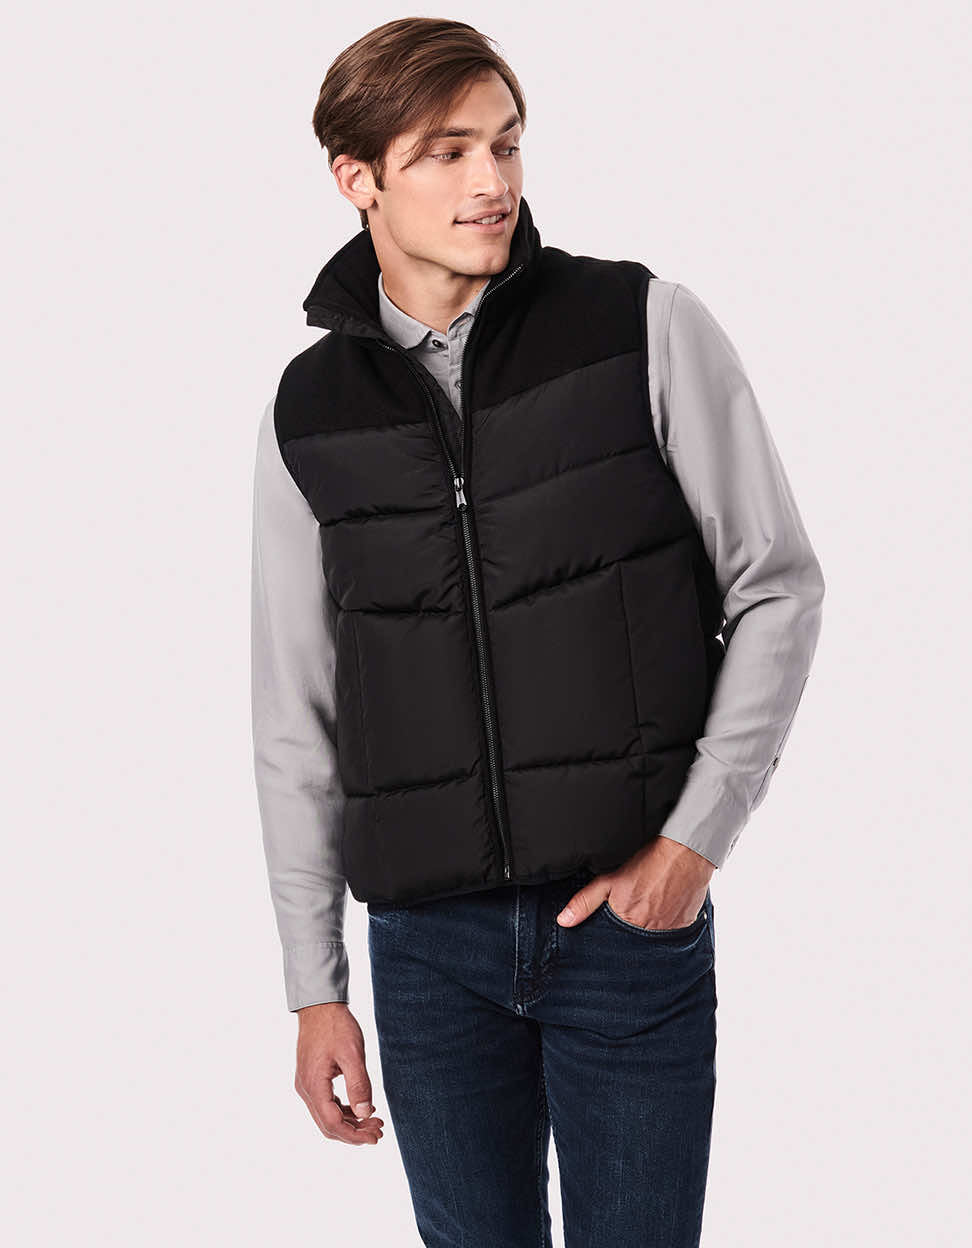 Sleeveless vest with logo in merino wool - Ernardo